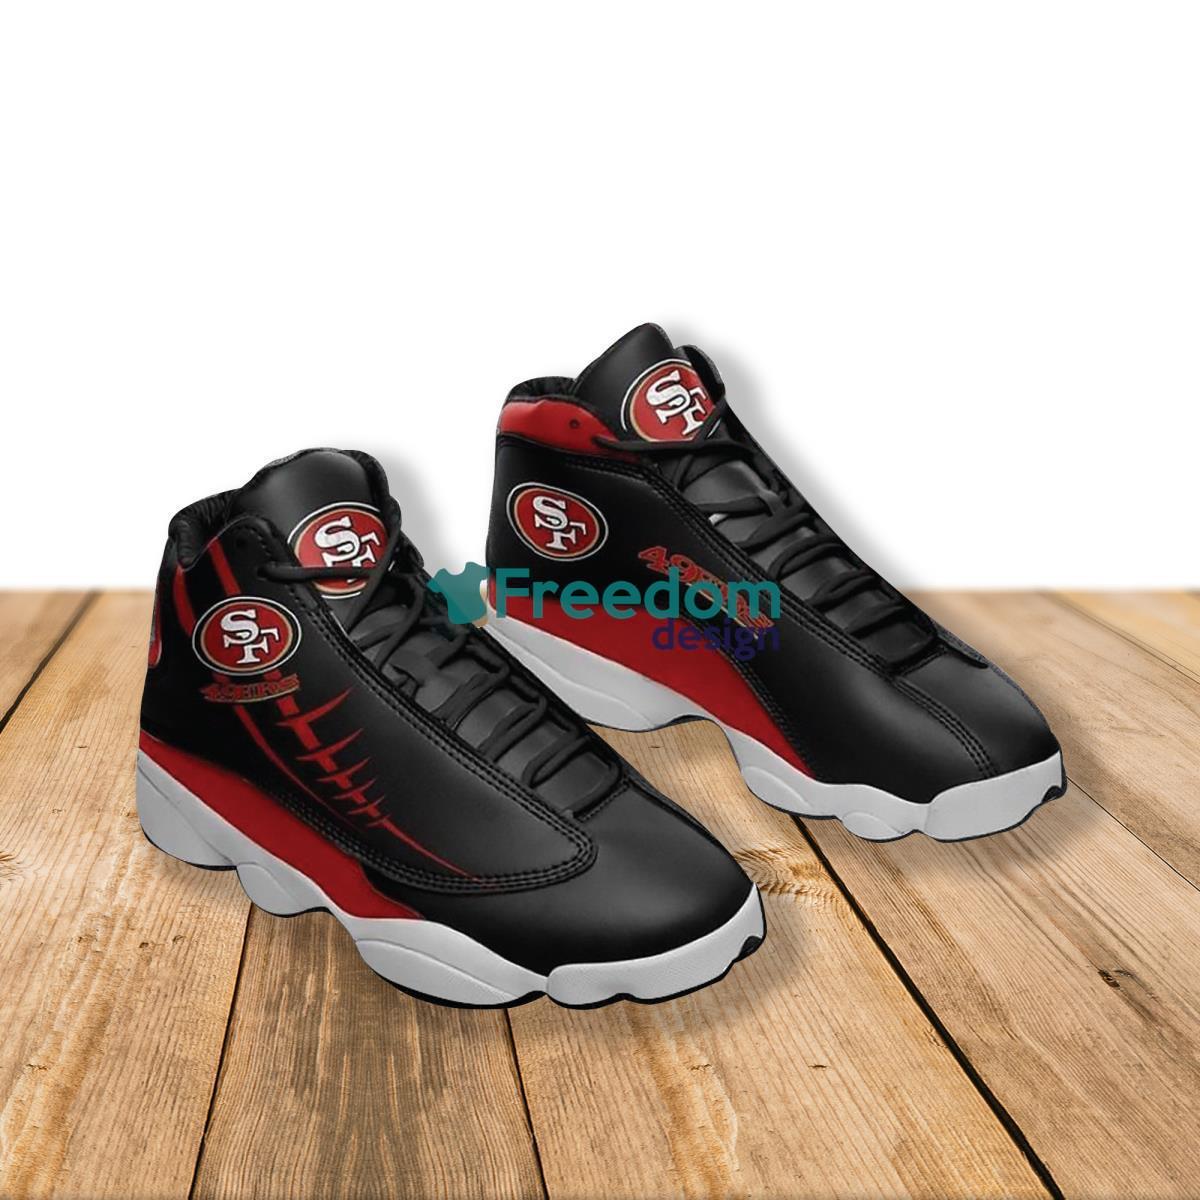 San Francisco 49ers Camo Style Air Jordan 13 Shoes For Fans